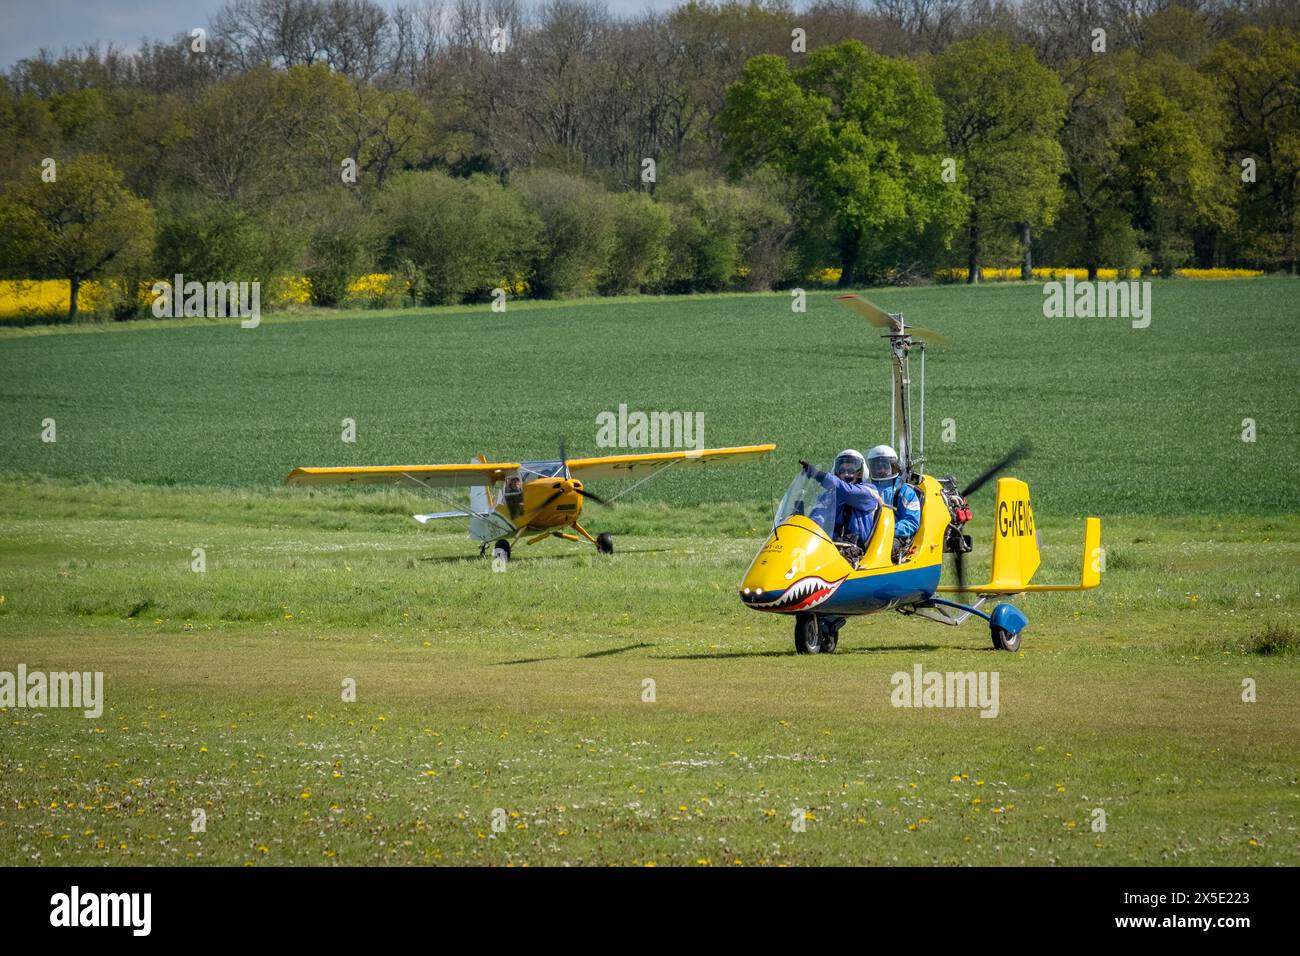 Un avion léger Sherwood Scout G-INYS atterrissant derrière un gyrocoptère jaune à la Foire commerciale Popham Microlight en mai 2024 dans le Hampshire, en Angleterre Banque D'Images